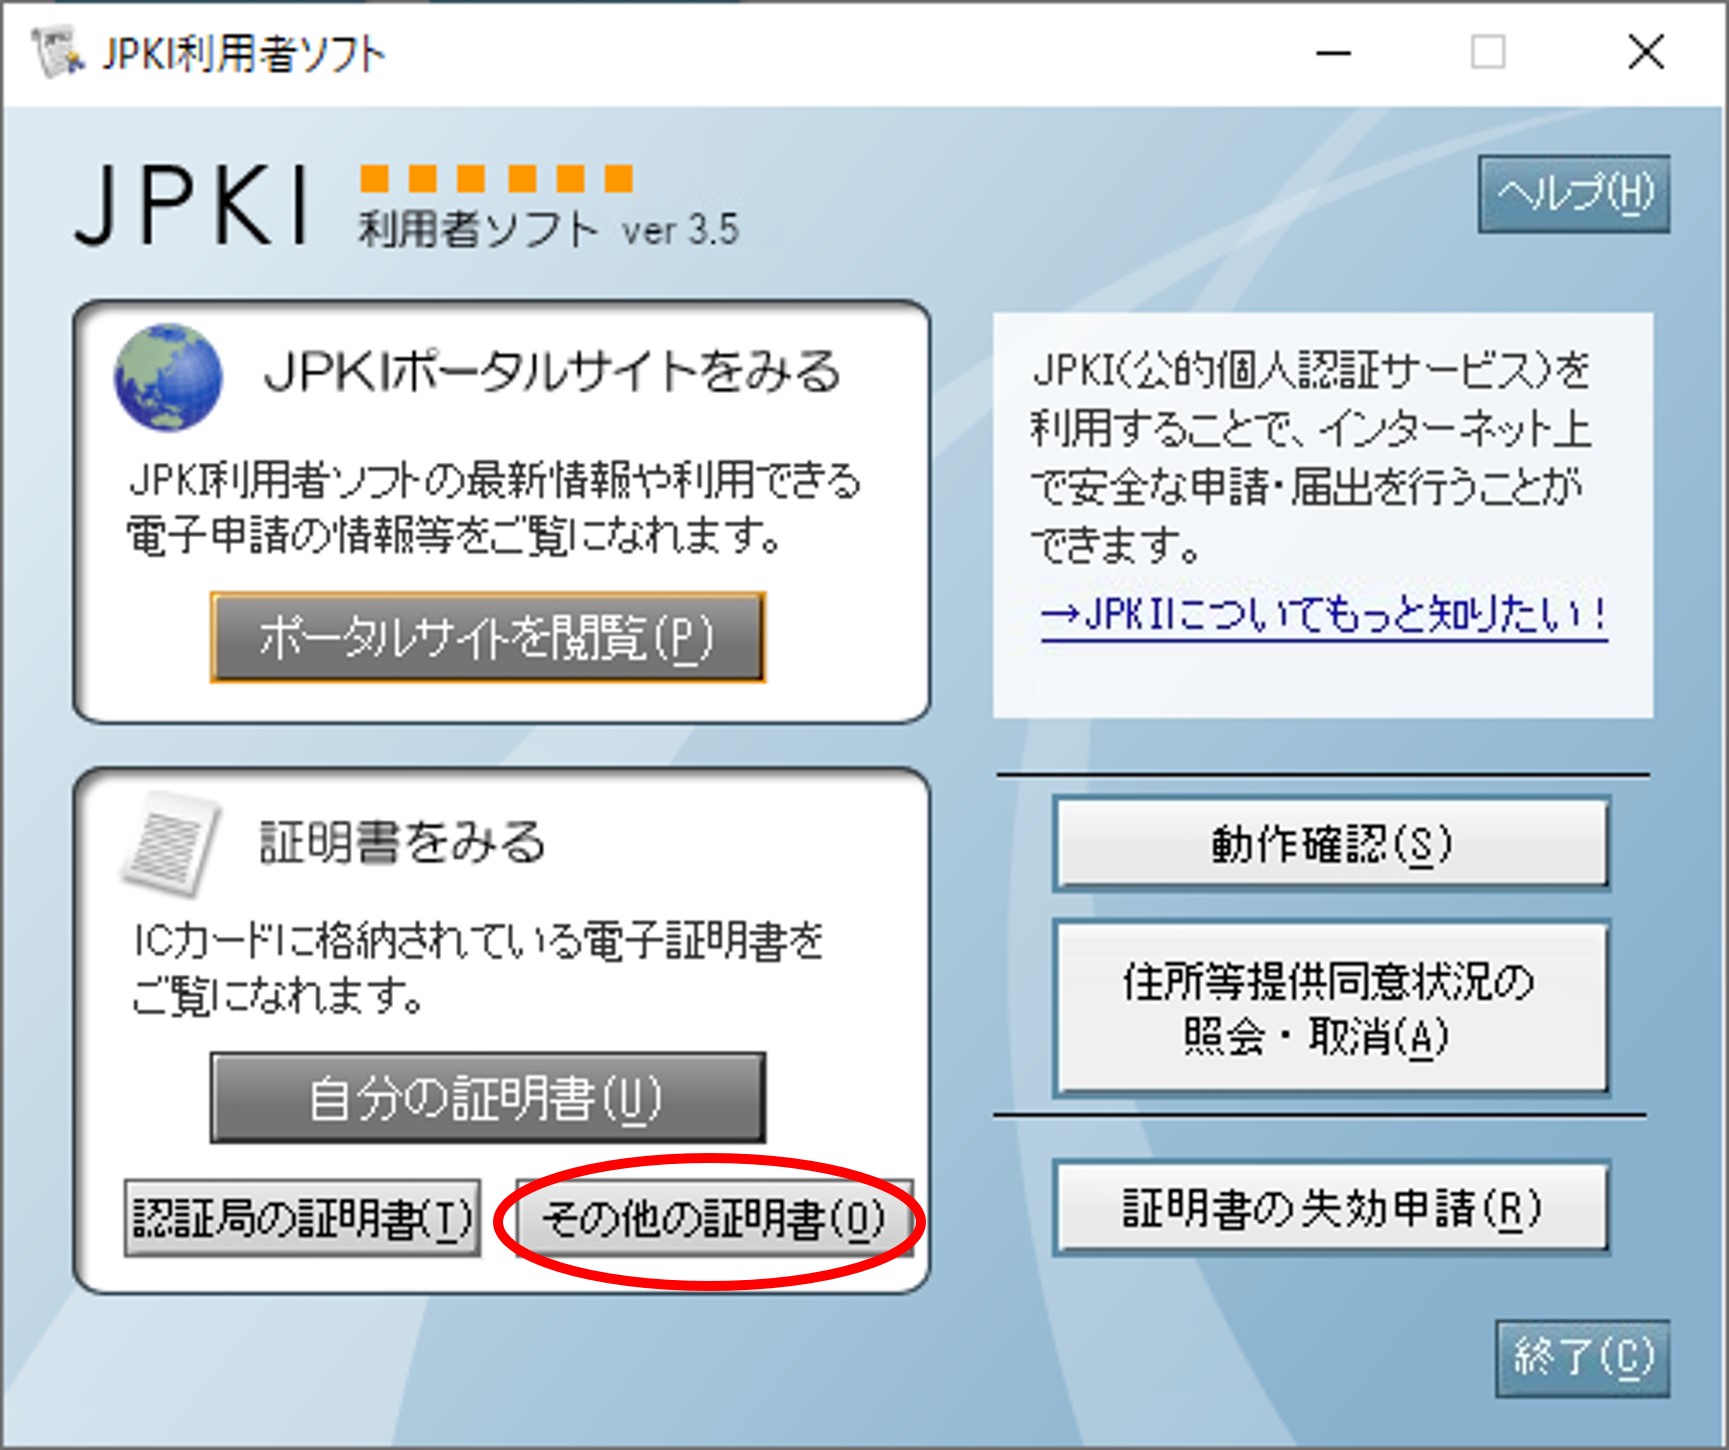 「JPKI利用者ソフト」のウィンドウイメージ